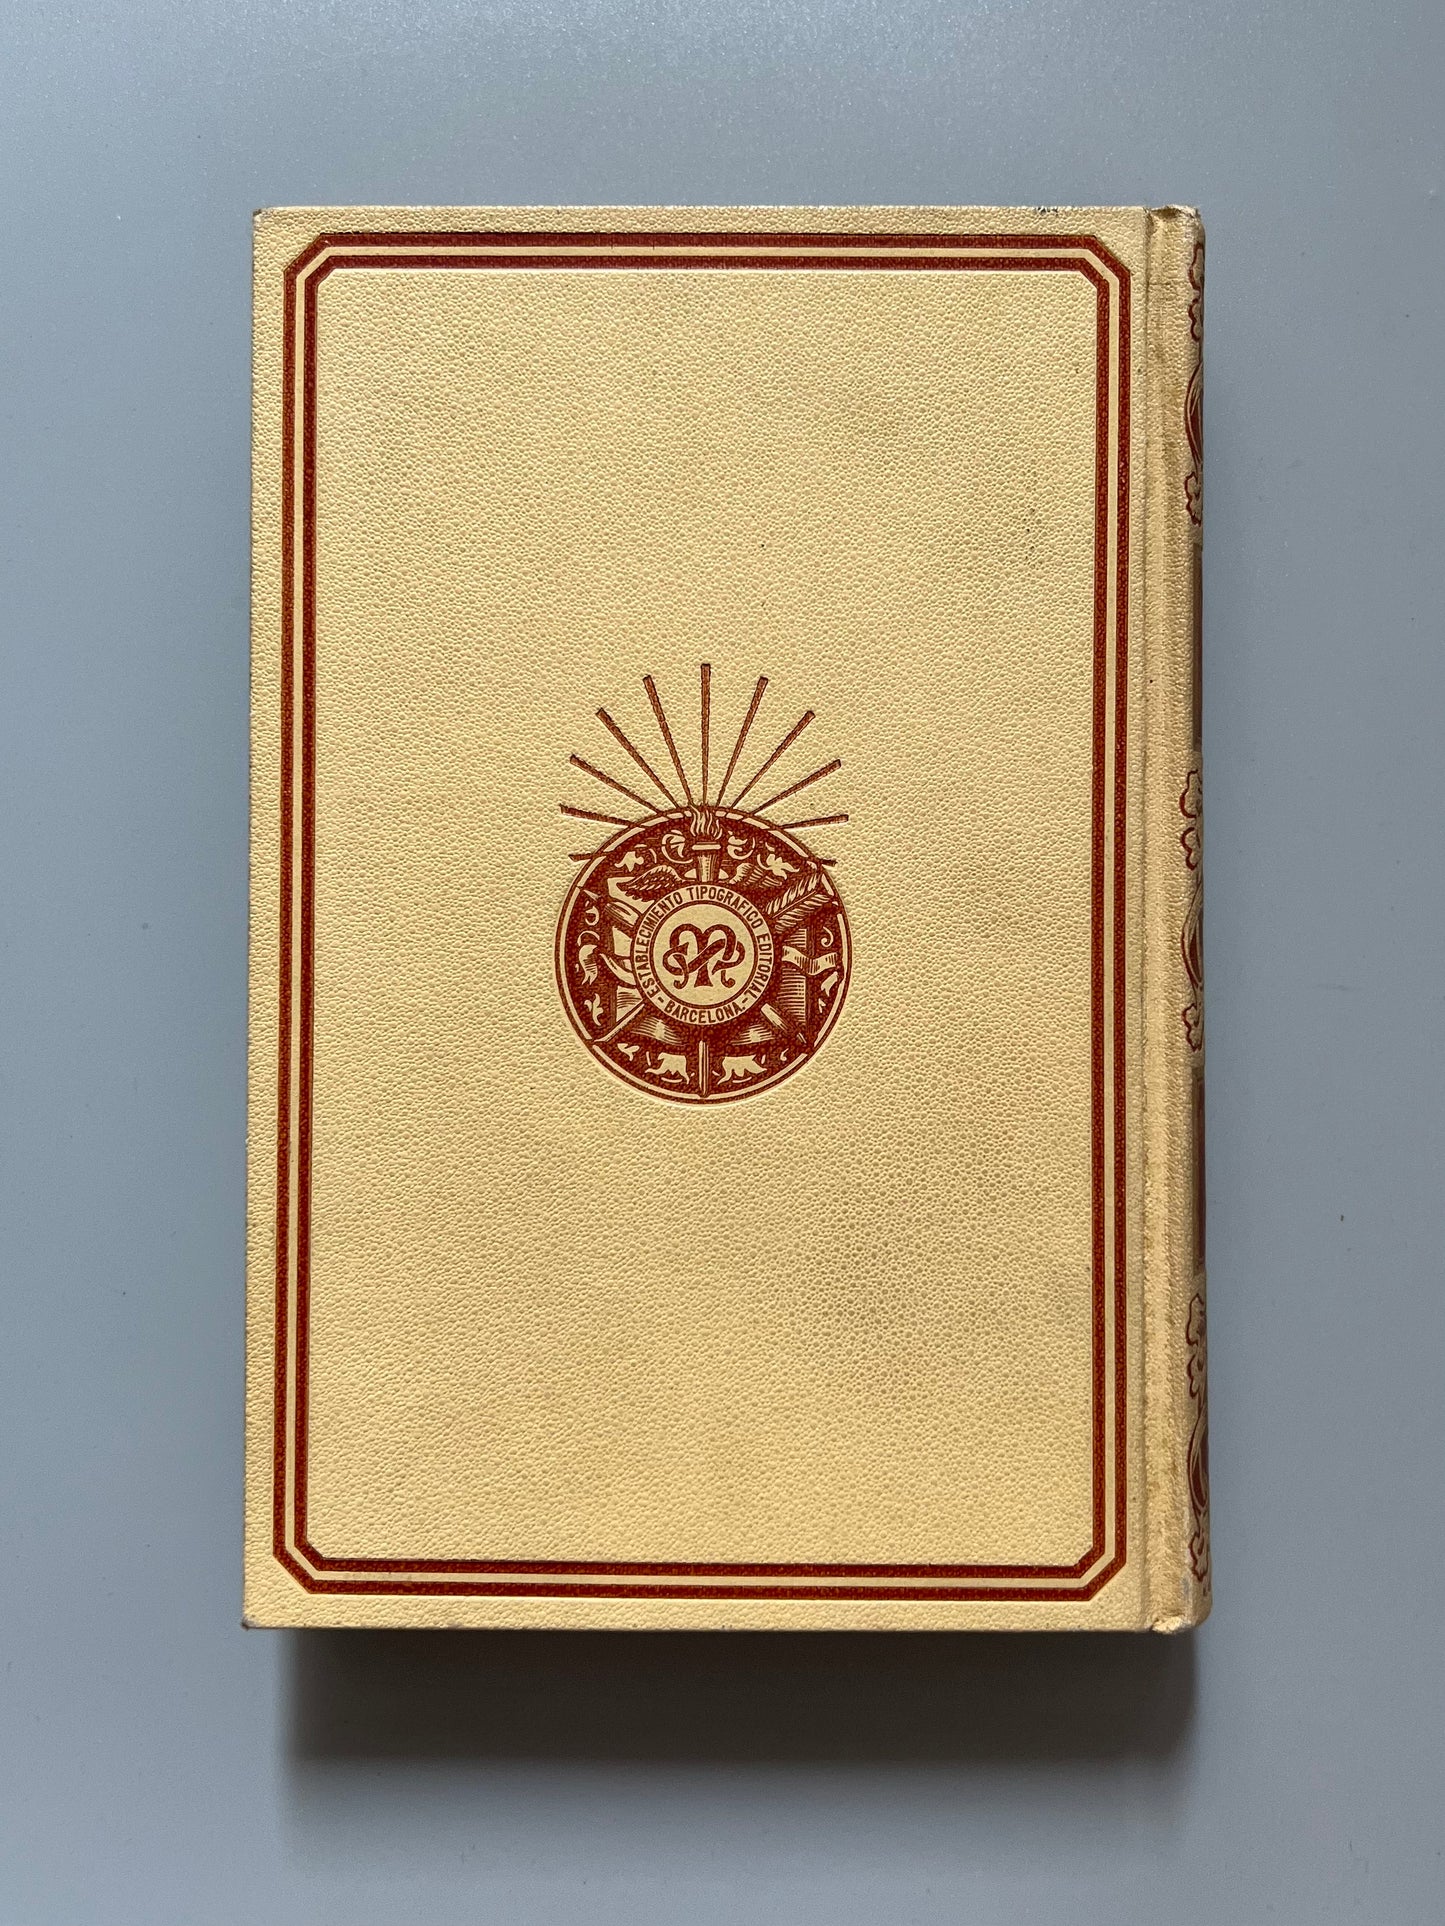 Vida y semblanzas de Cervantes, Miguel Santos Oliver - Montaner y Simón, 1916